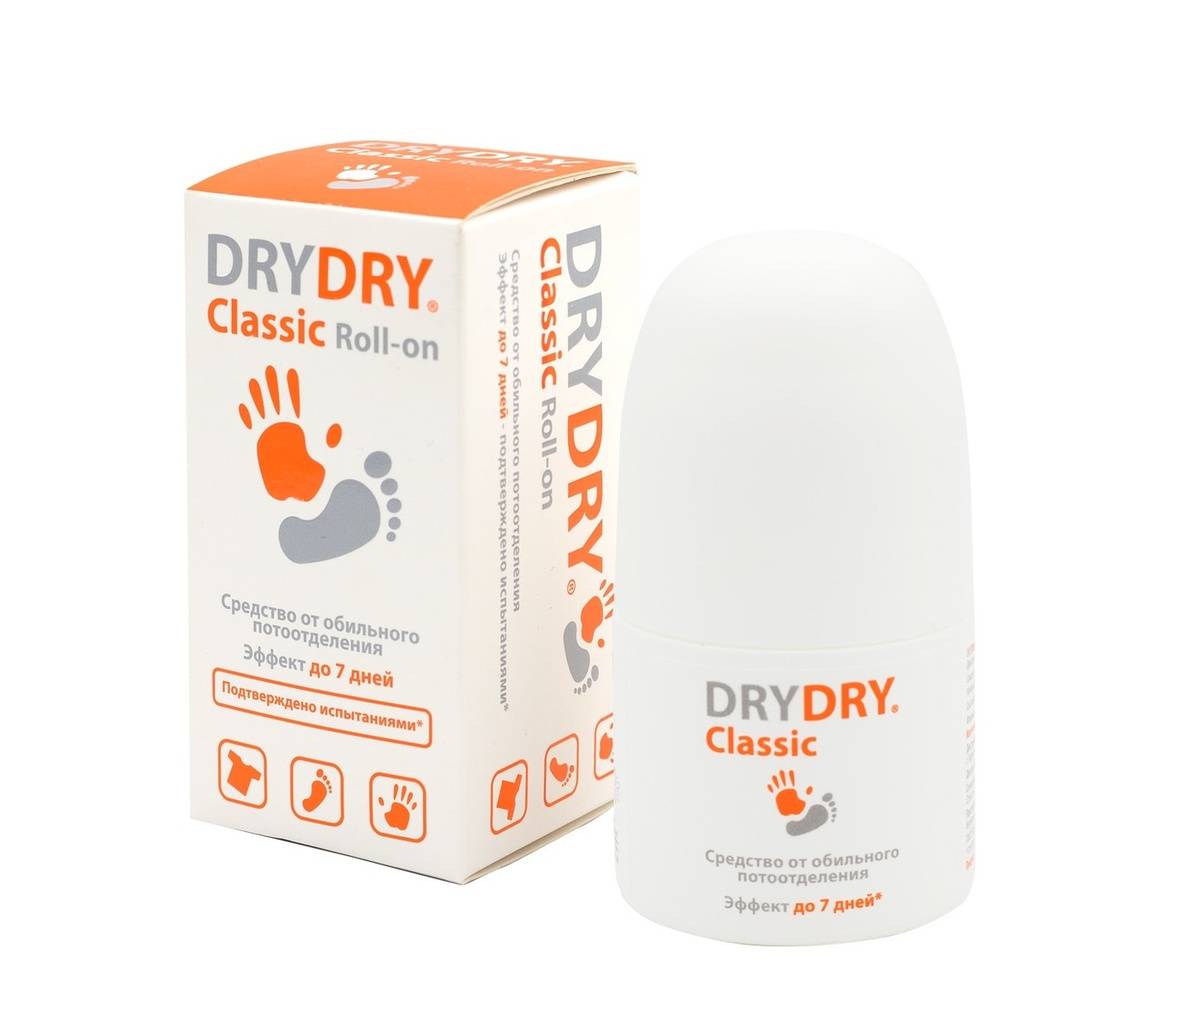 Драй драй дезодорант: виды dry dry, отзывы врачей о формагель от потливости, средство от пота под мышками алгель, формидрон